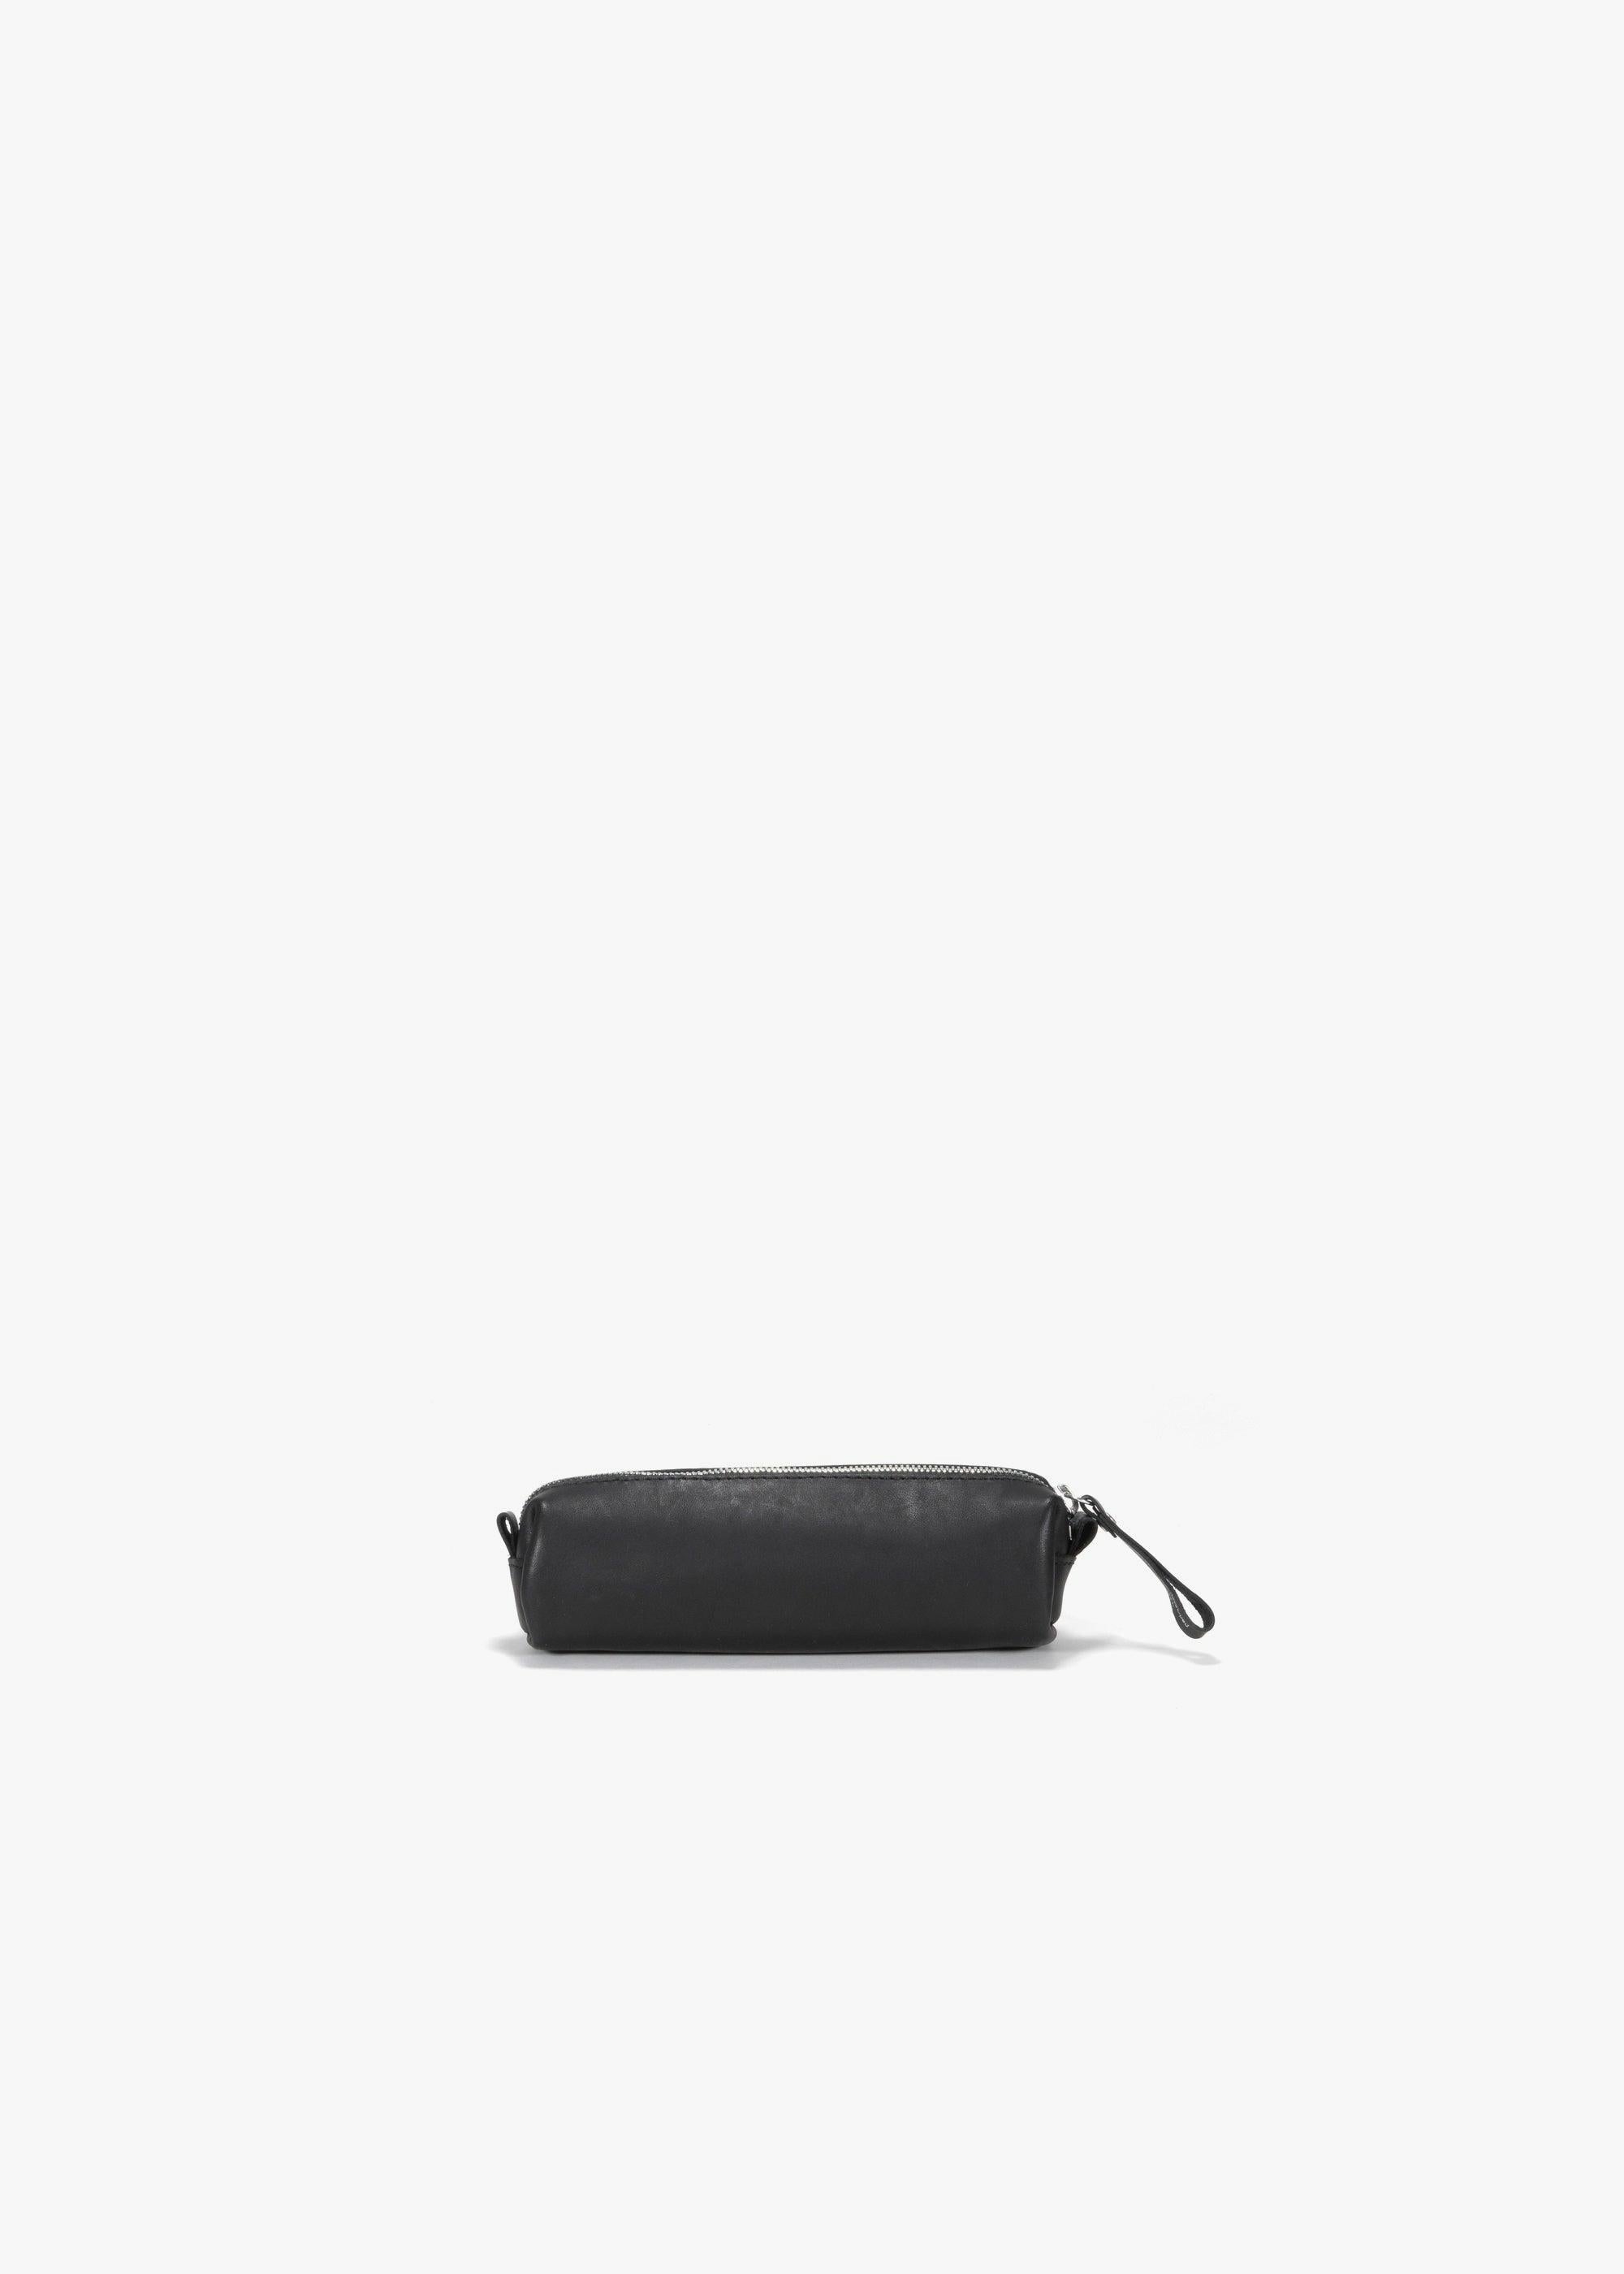 Pencil Pouch – Black Leather Canvas